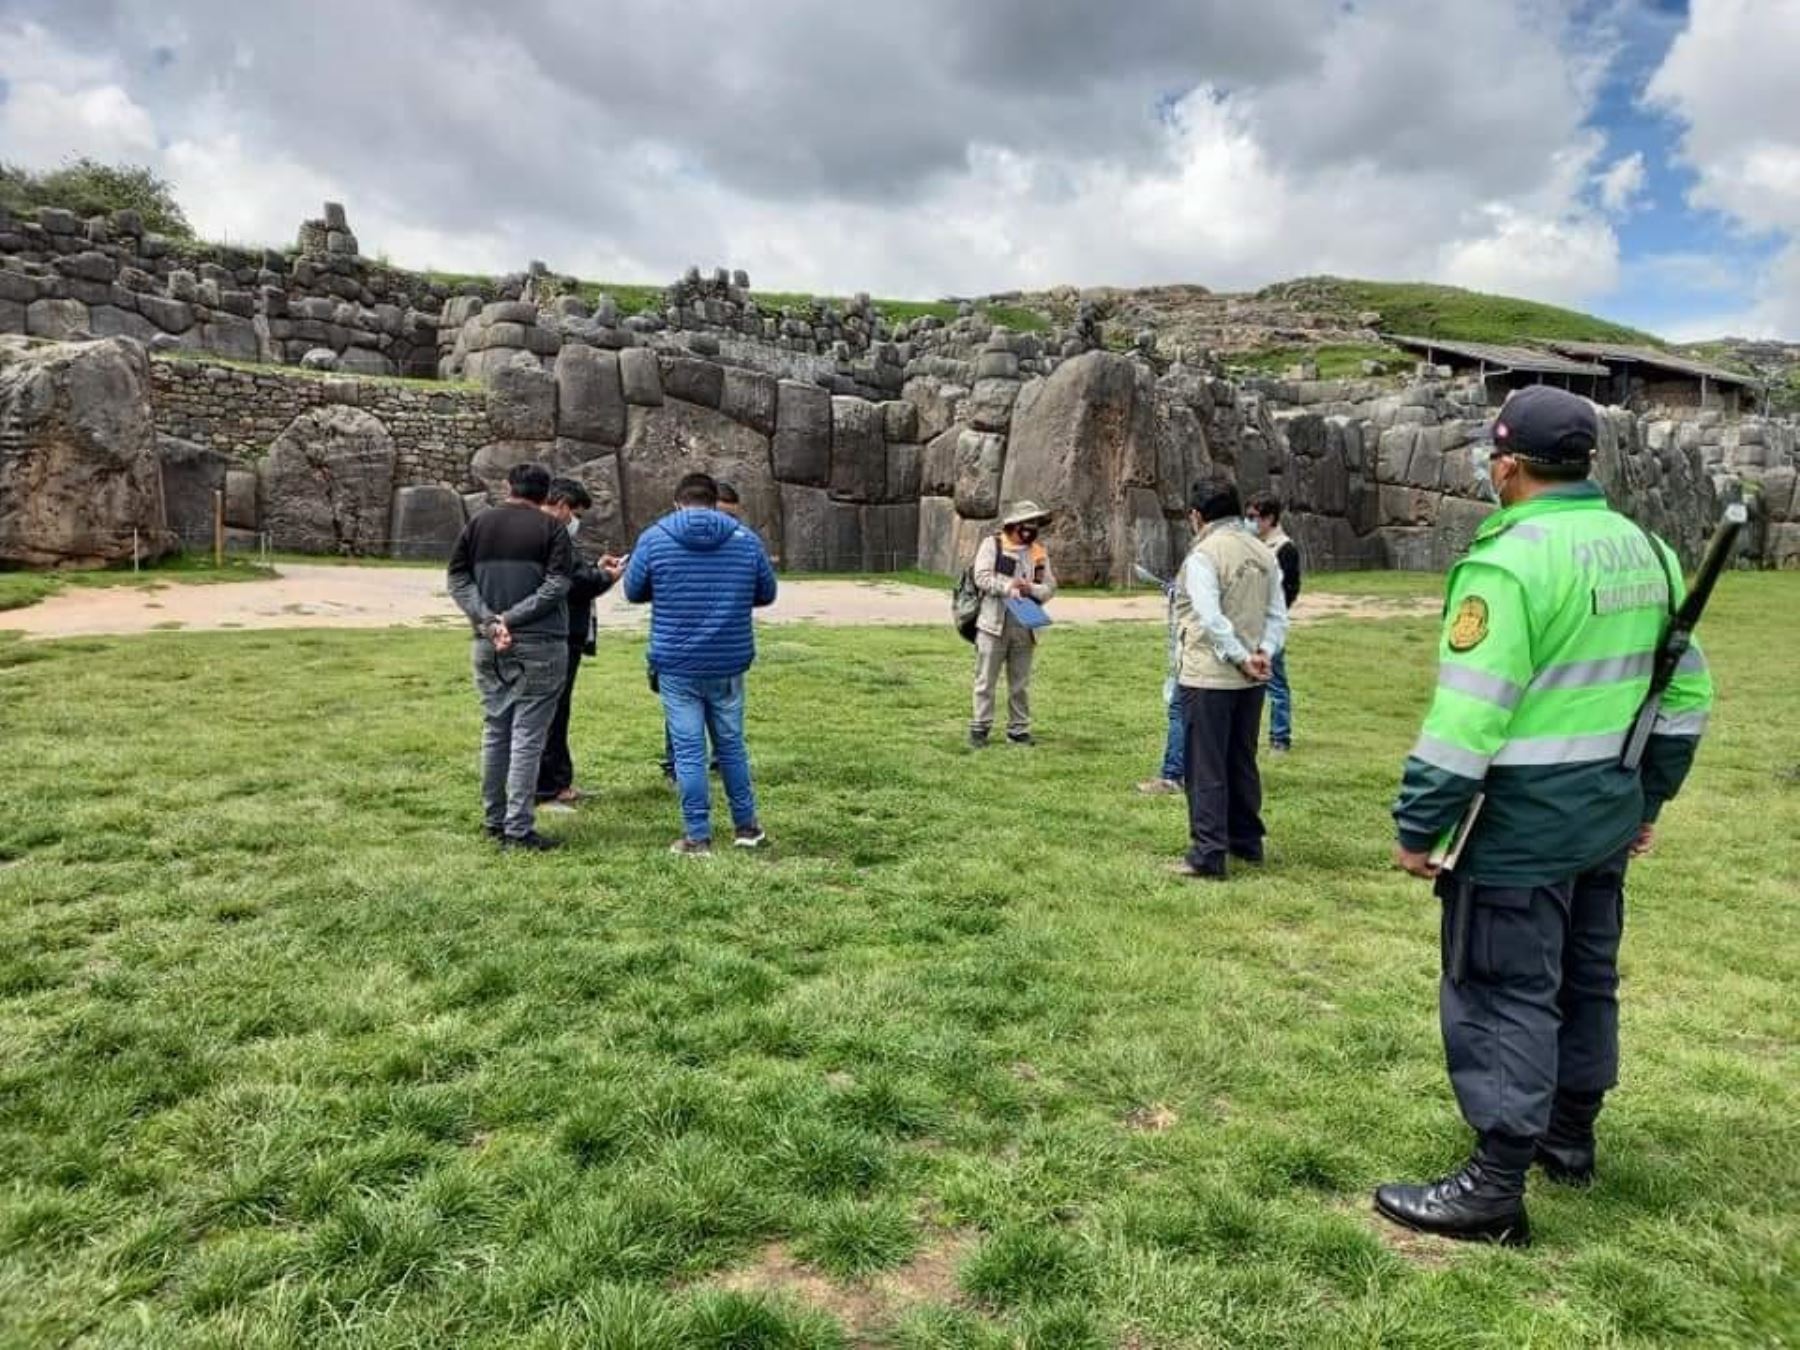 Autoridades de Cusco verifican las medidas de prevención para evitar la propagación del coronavirus covid-19 en Sacsayhuamán y otros parques arqueológicos de la región. Foto: ANDINA/Percy Hurtado Santillán.